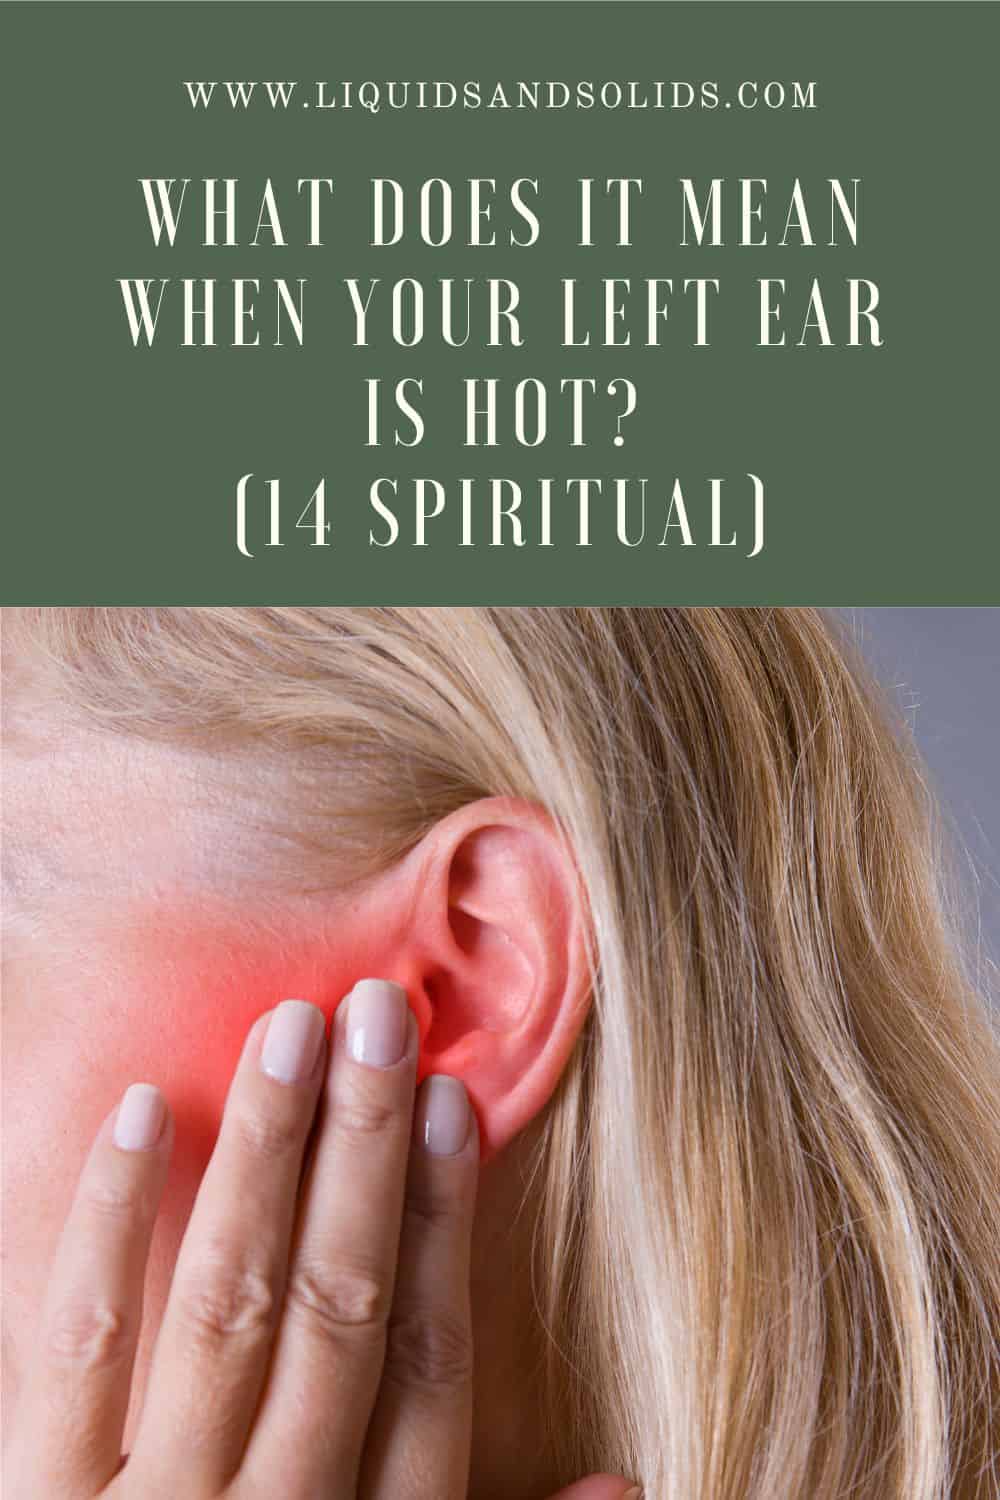  ماذا يعني أن تكون أذنك اليسرى ساخنة؟ (14 معاني روحية)